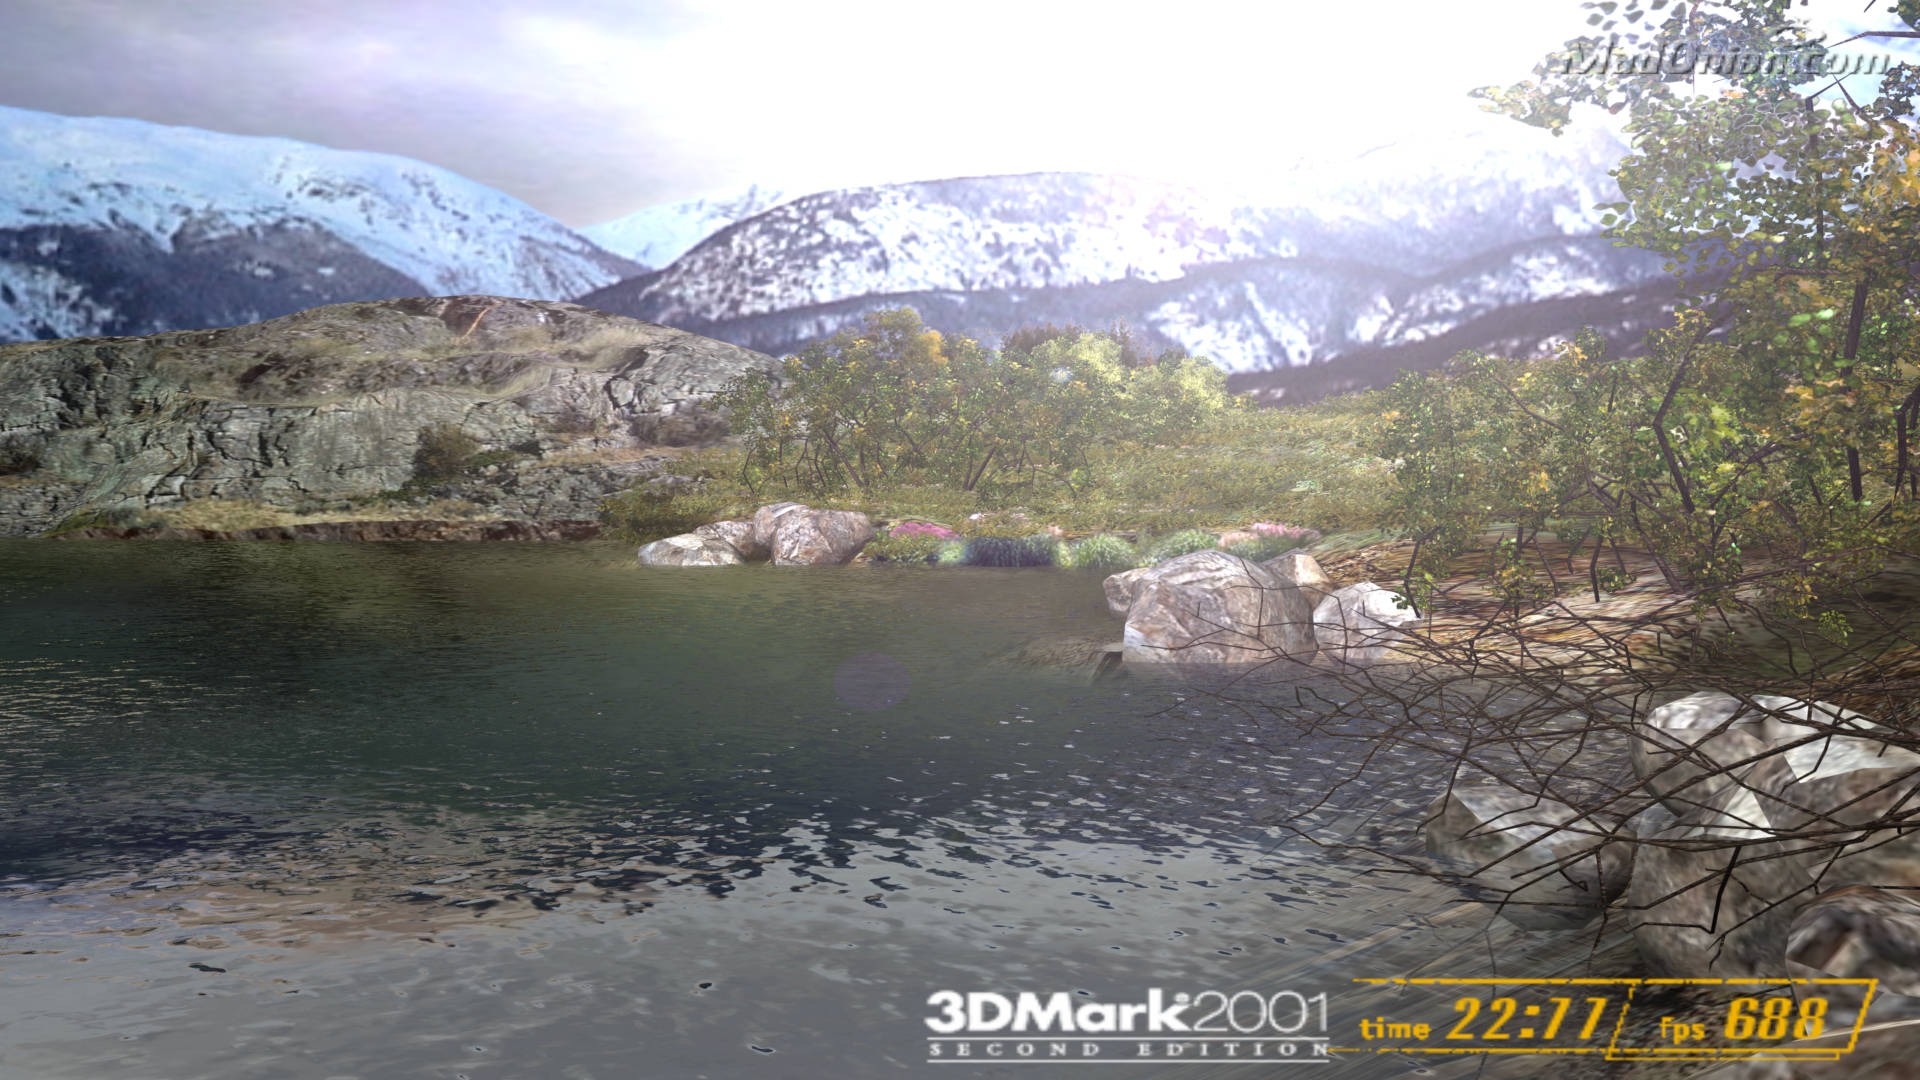 Una captura de pantalla de la prueba de Naturaleza en la herramienta de referencia 3DMark2001